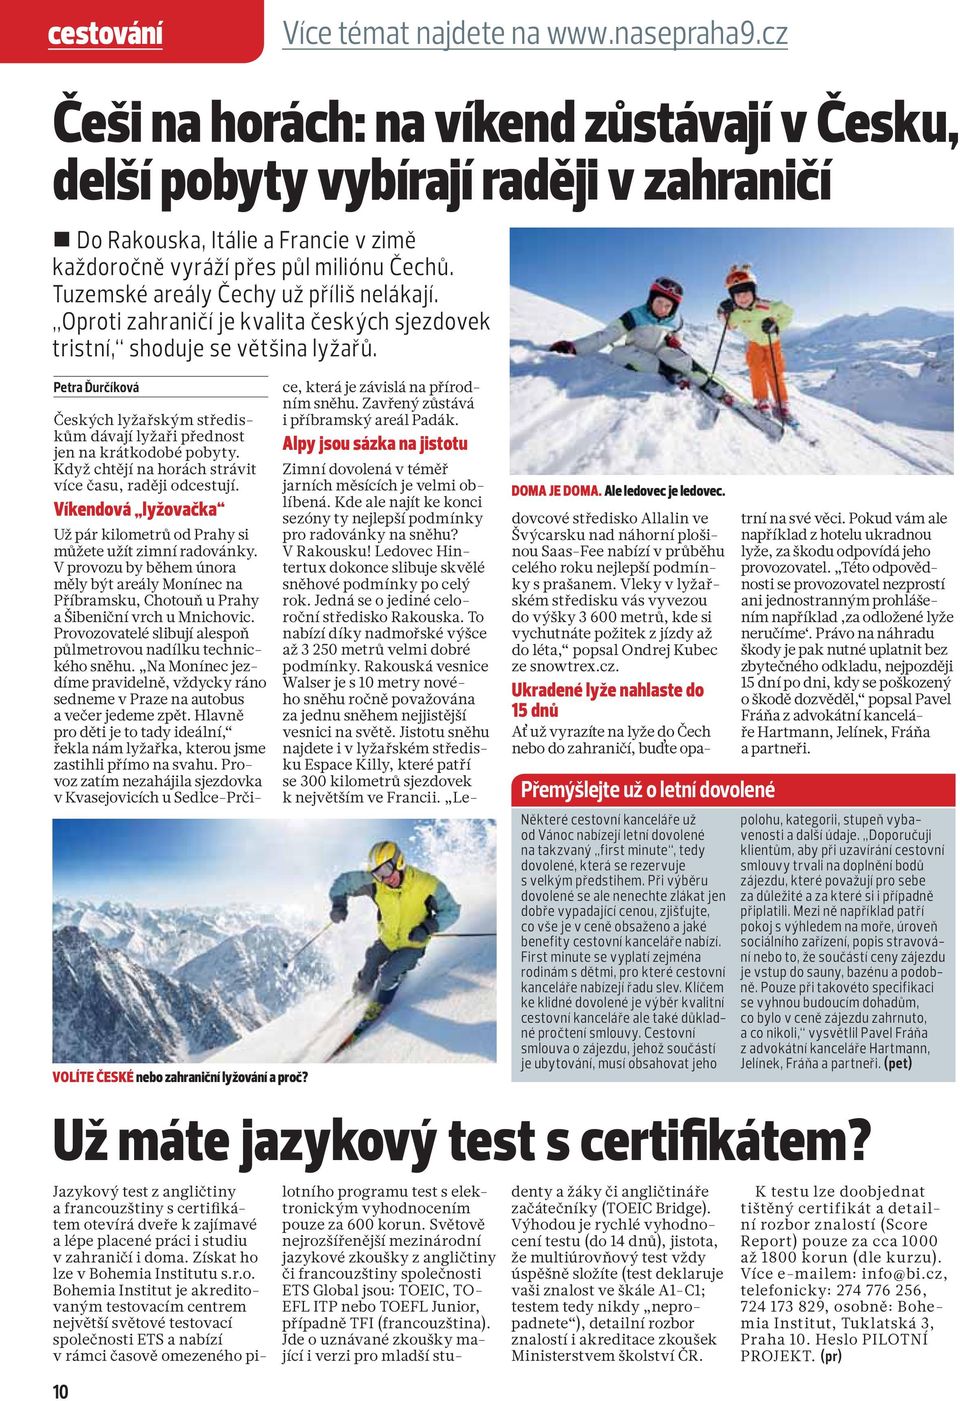 Tuzemské areály Čechy už příliš nelákají. Oproti zahraničí je kvalita českých sjezdovek tristní, shoduje se většina lyžařů.